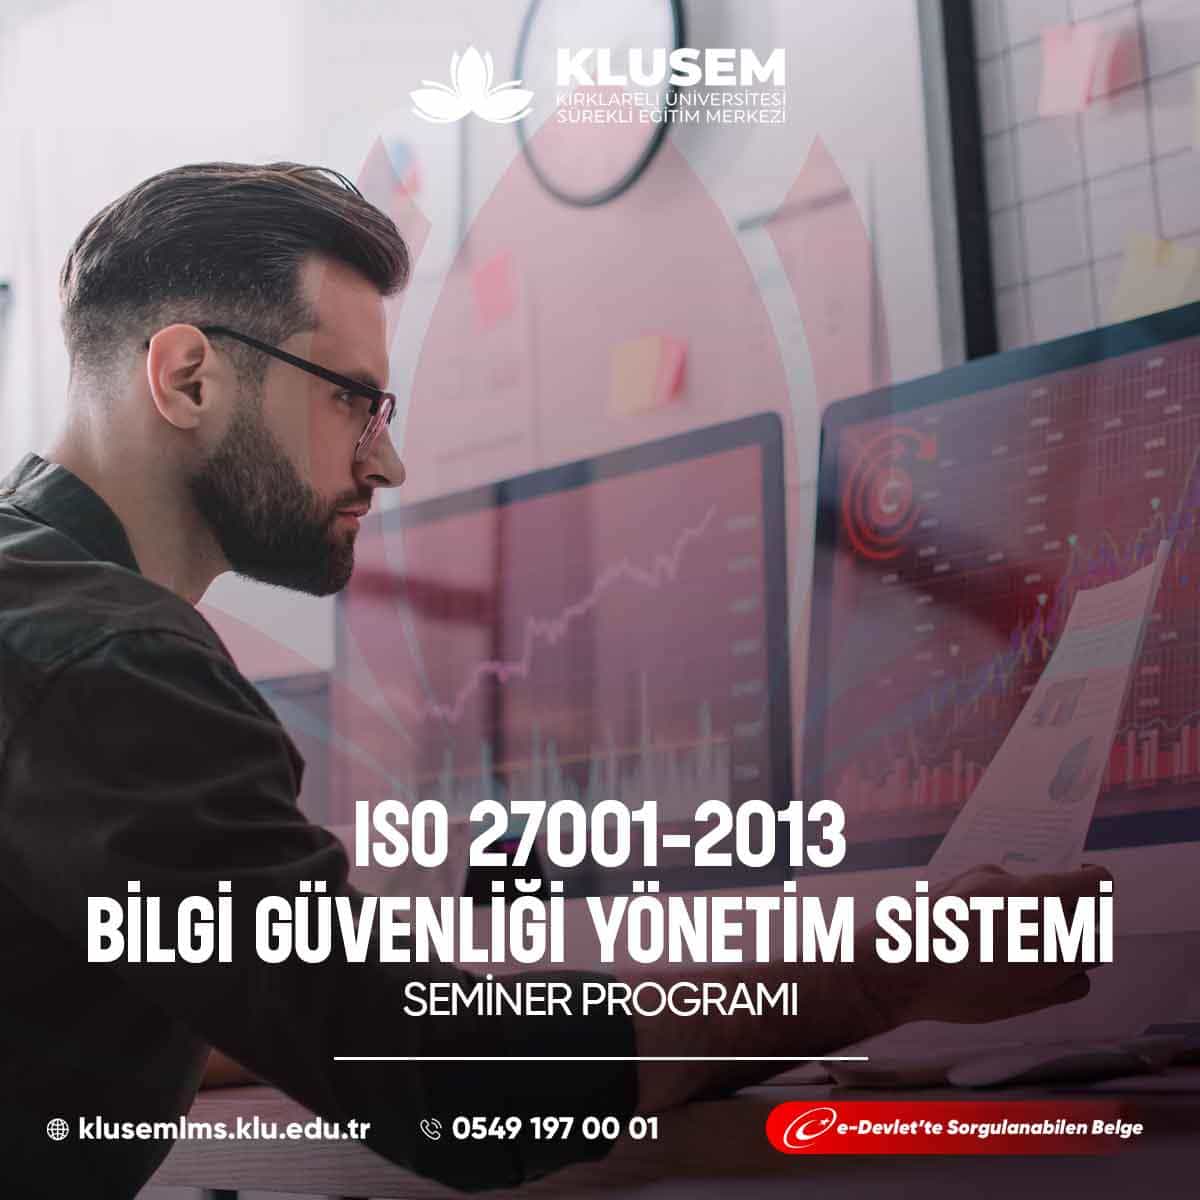 ISO 27001:2013, bir organizasyonun bilgi güvenliği yönetim sistemini kurmasını, uygulamasını, sürdürmesini ve sürekli olarak iyileştirmesini sağlar.